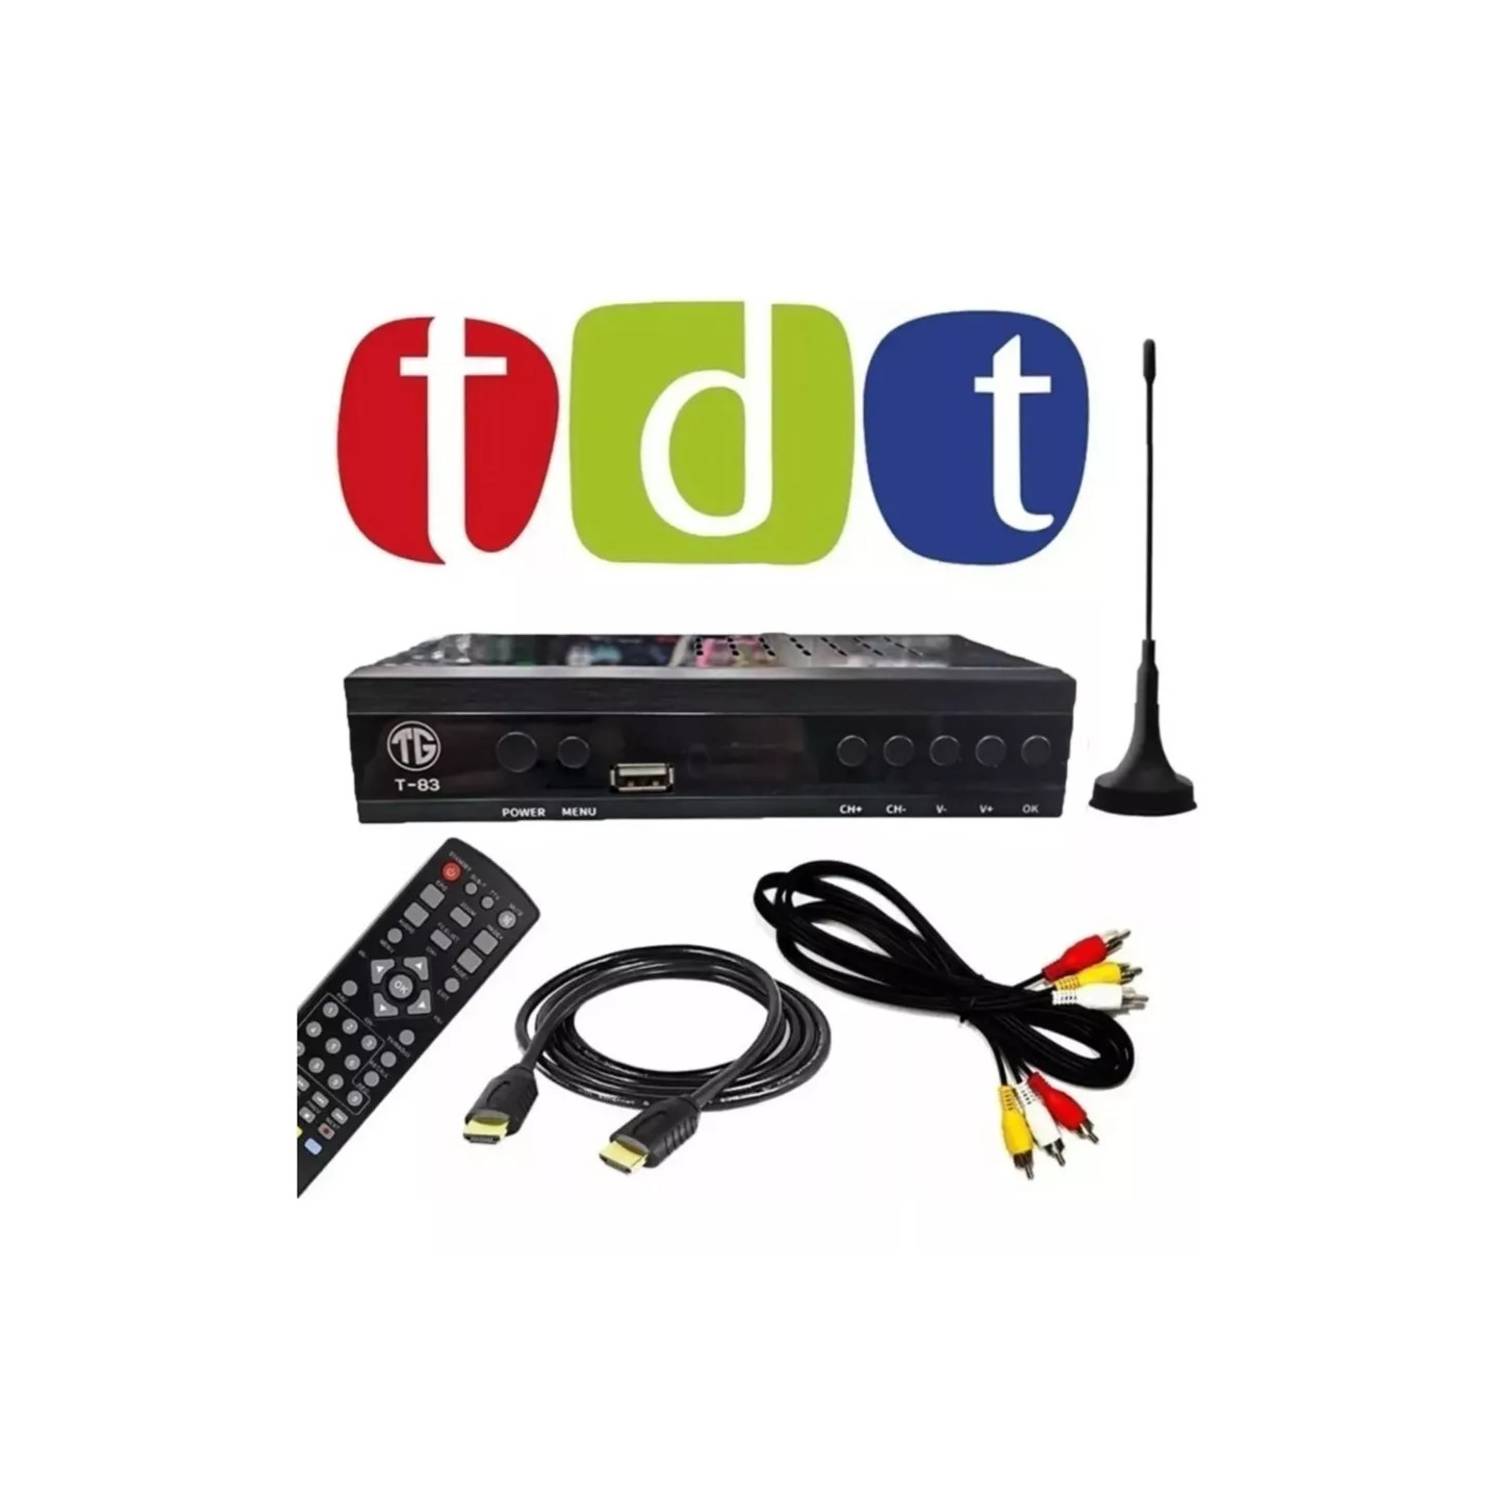 Decodificador Tdt Receptor Tv Digital Dvb Hdmi Antena GENERICO